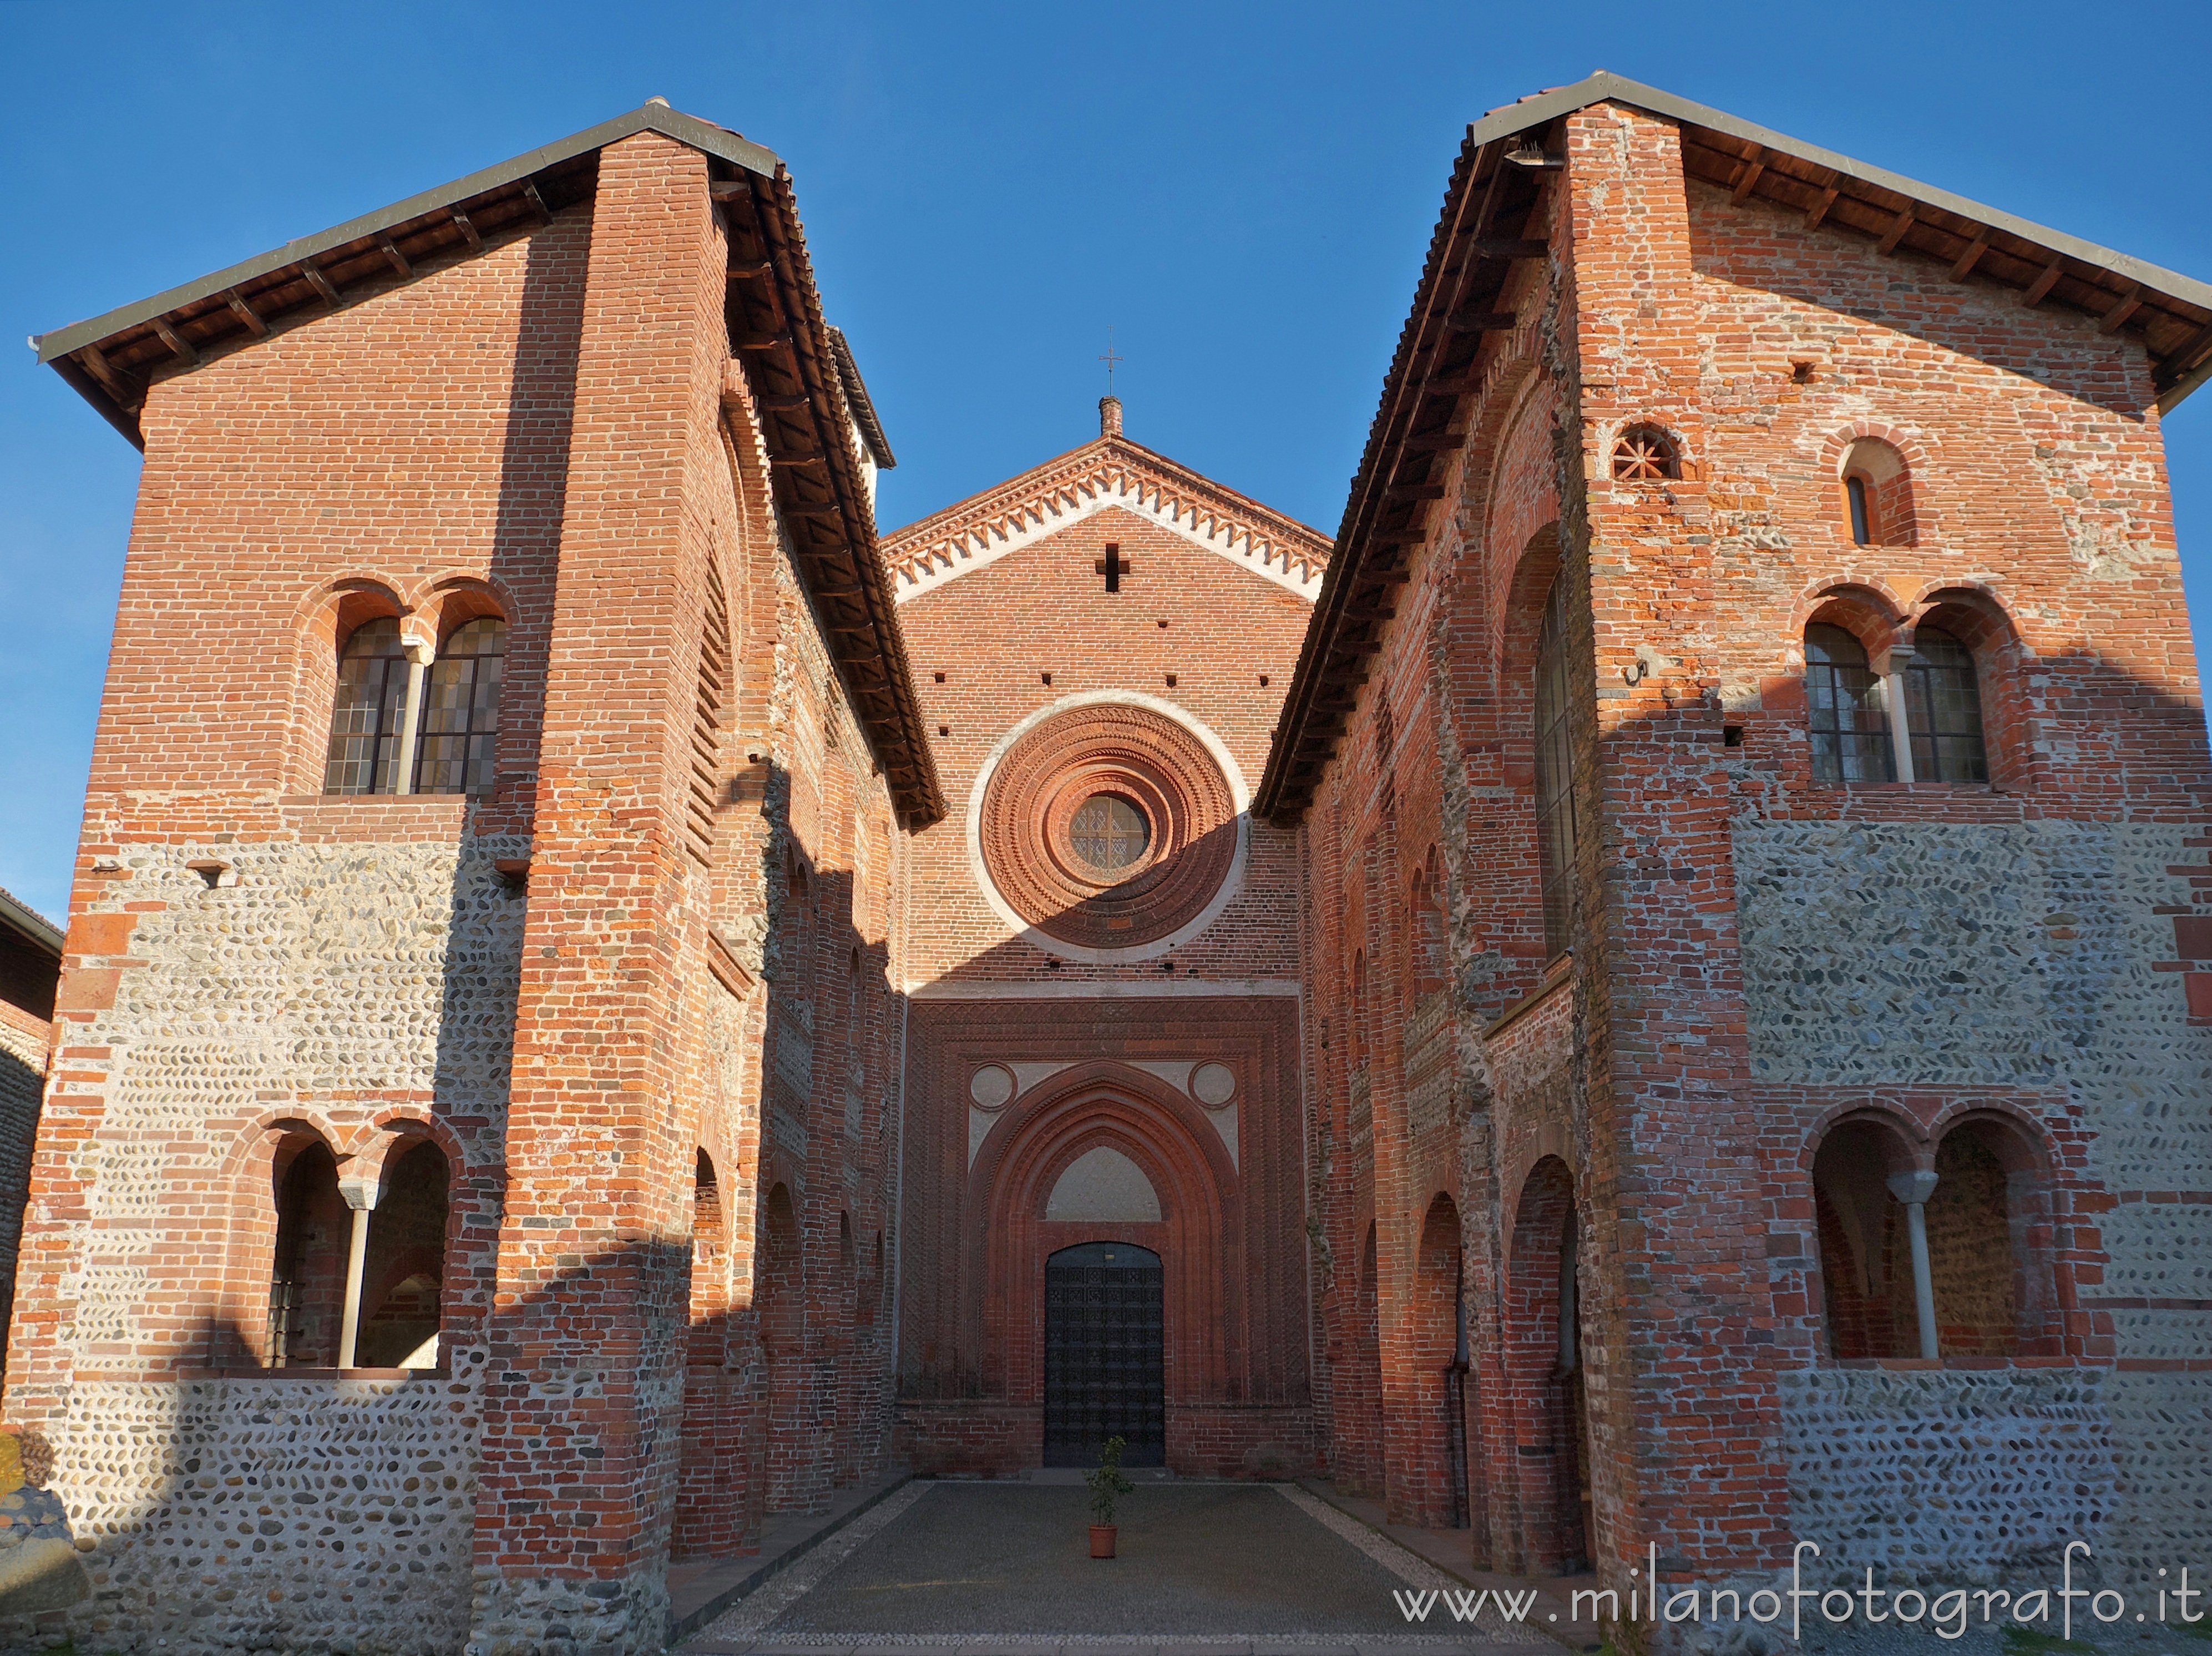 San Nazzaro Sesia (Novara, Italy): Facade of the church of the Abbey of the Saints Nazario and Celso - San Nazzaro Sesia (Novara, Italy)